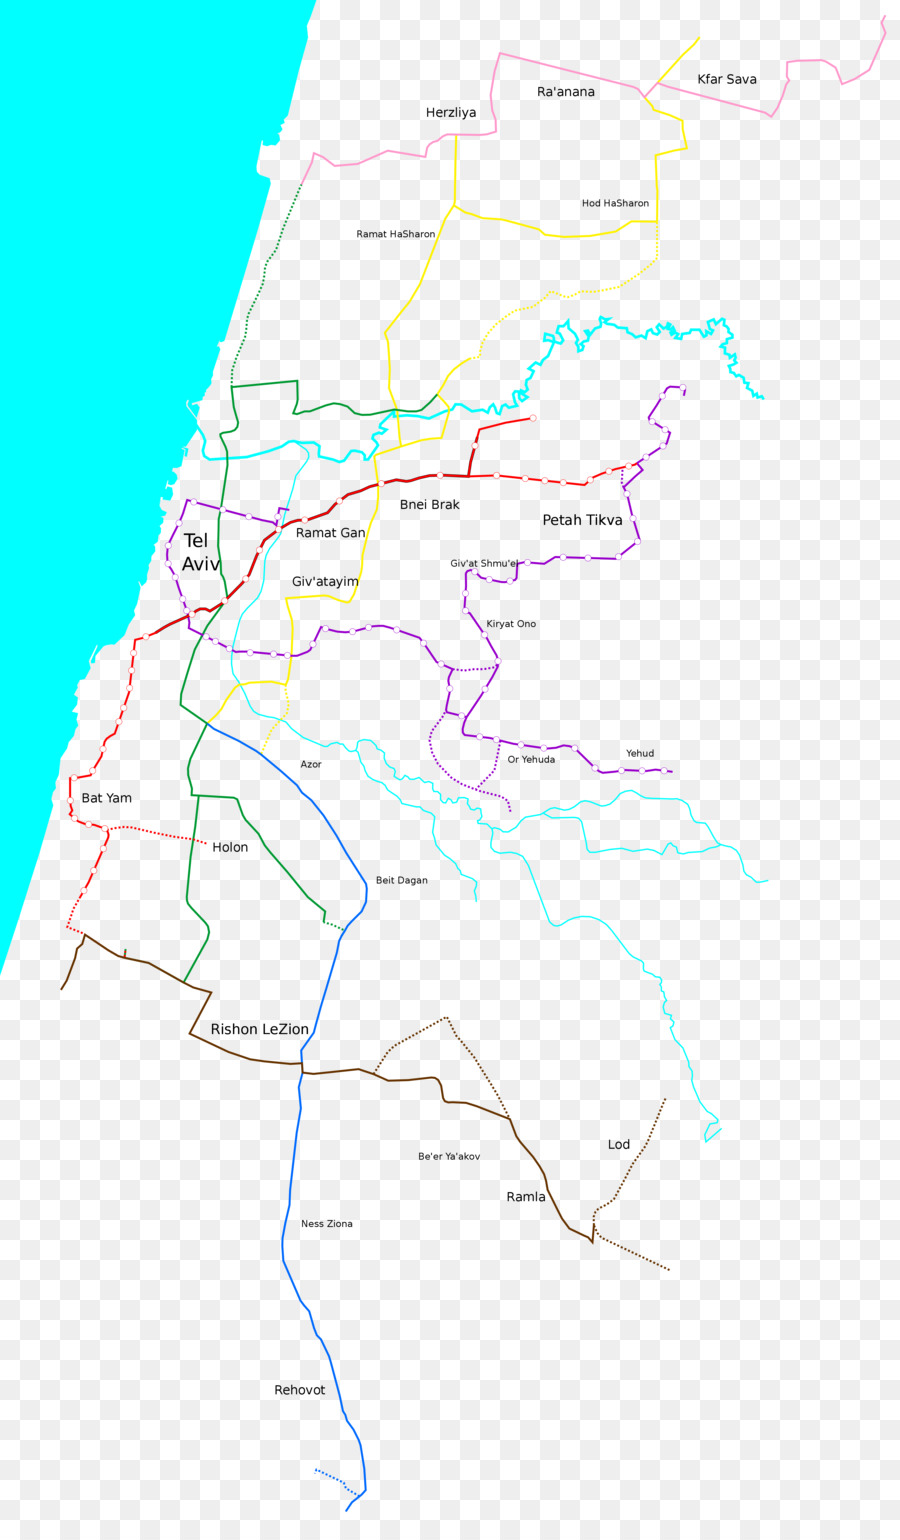 Tel Aviv Light Rail Red Line system, dem Nahverkehr in der Metropolregion Tel Aviv   die lila Linie Grüne Linie - Anzeigen